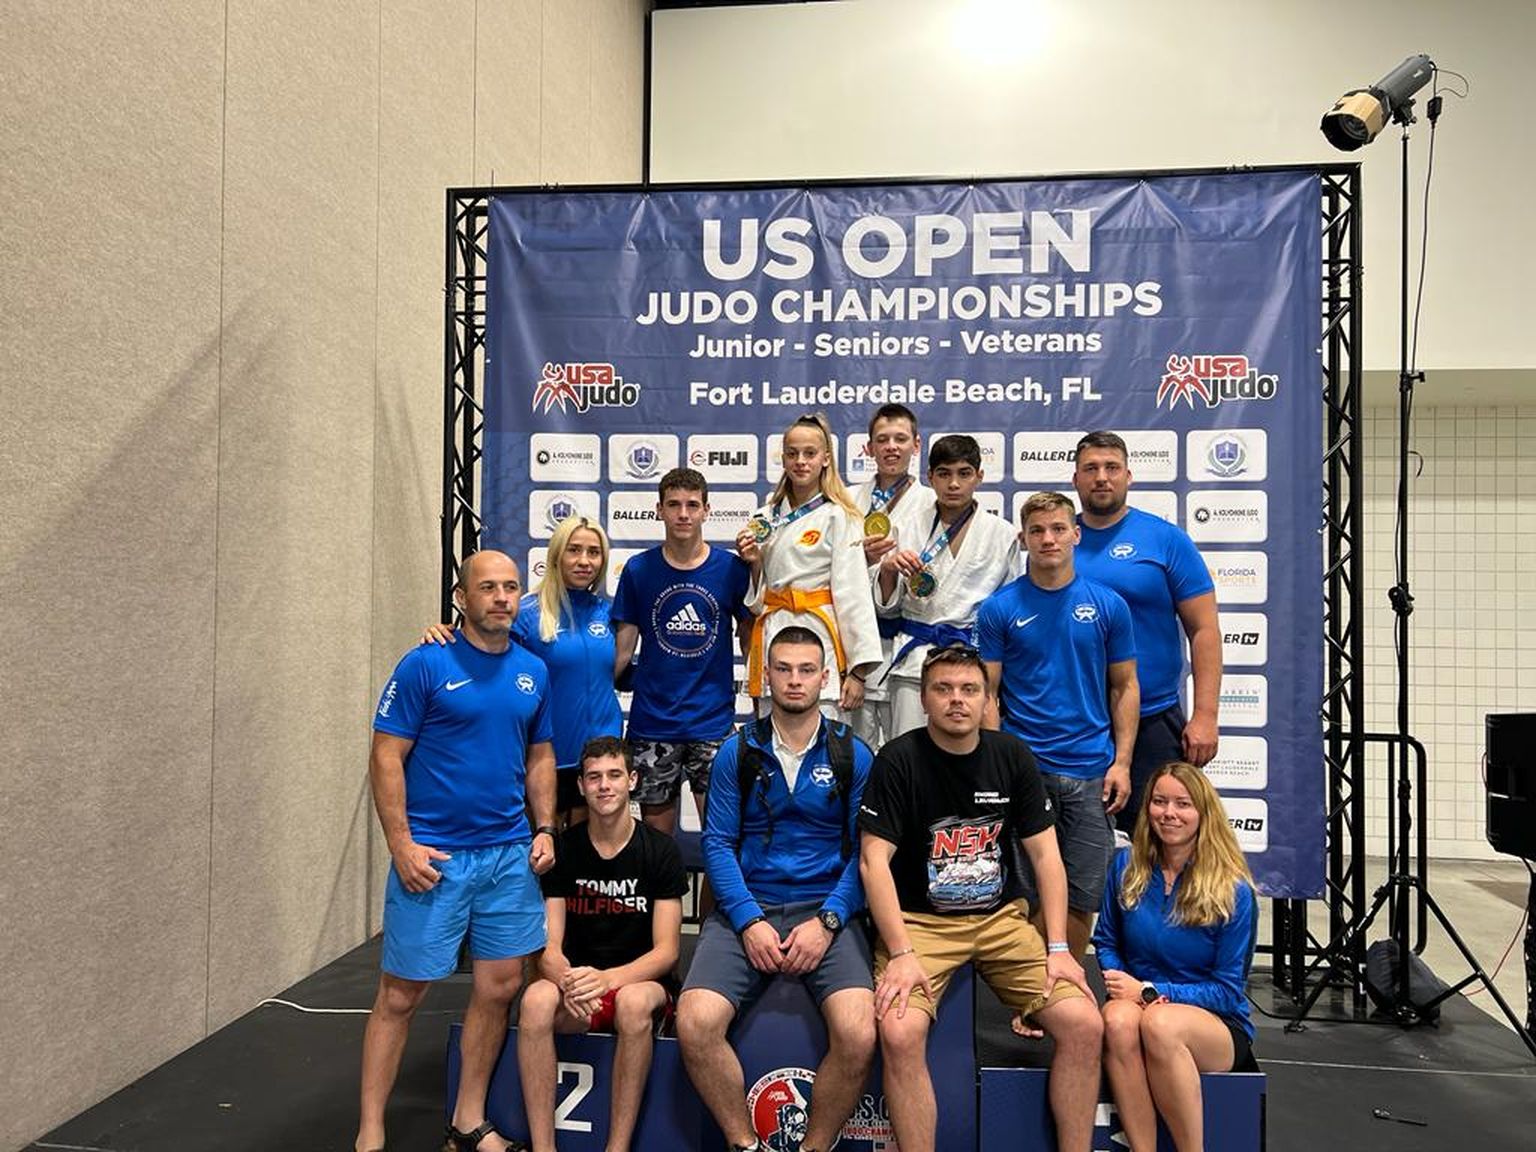 Сборная дзюдоистов Эстонии на сороевнованиях US Open.